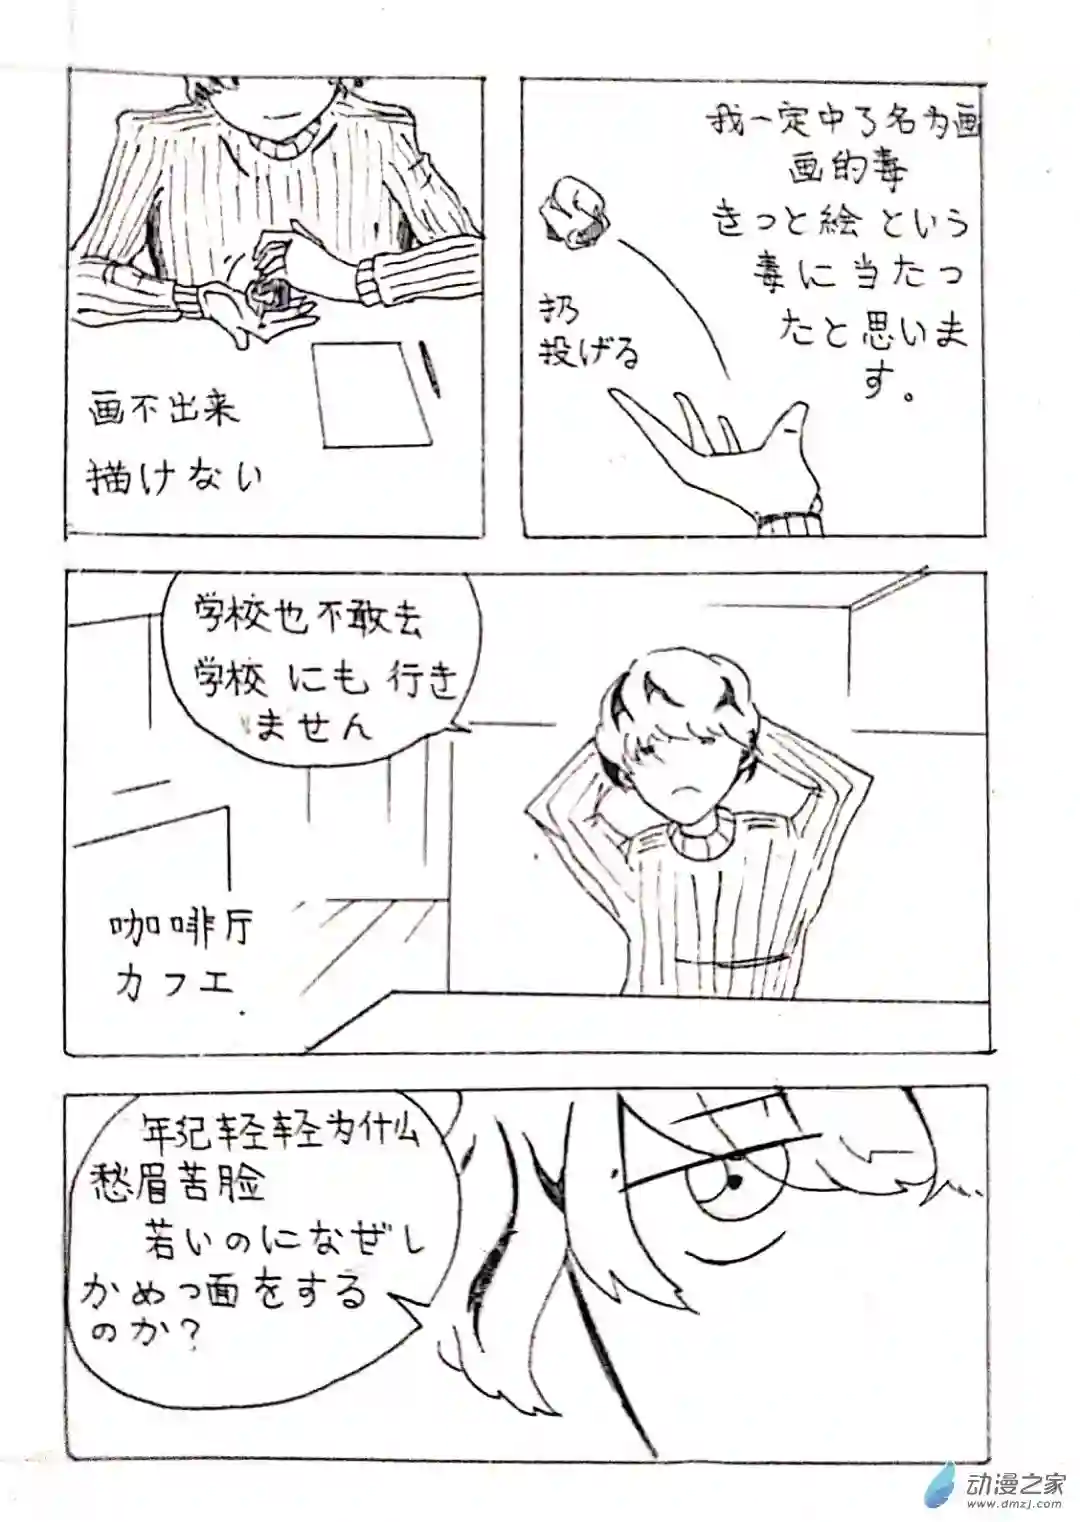 日刊漫画05 少年赏妹篇二